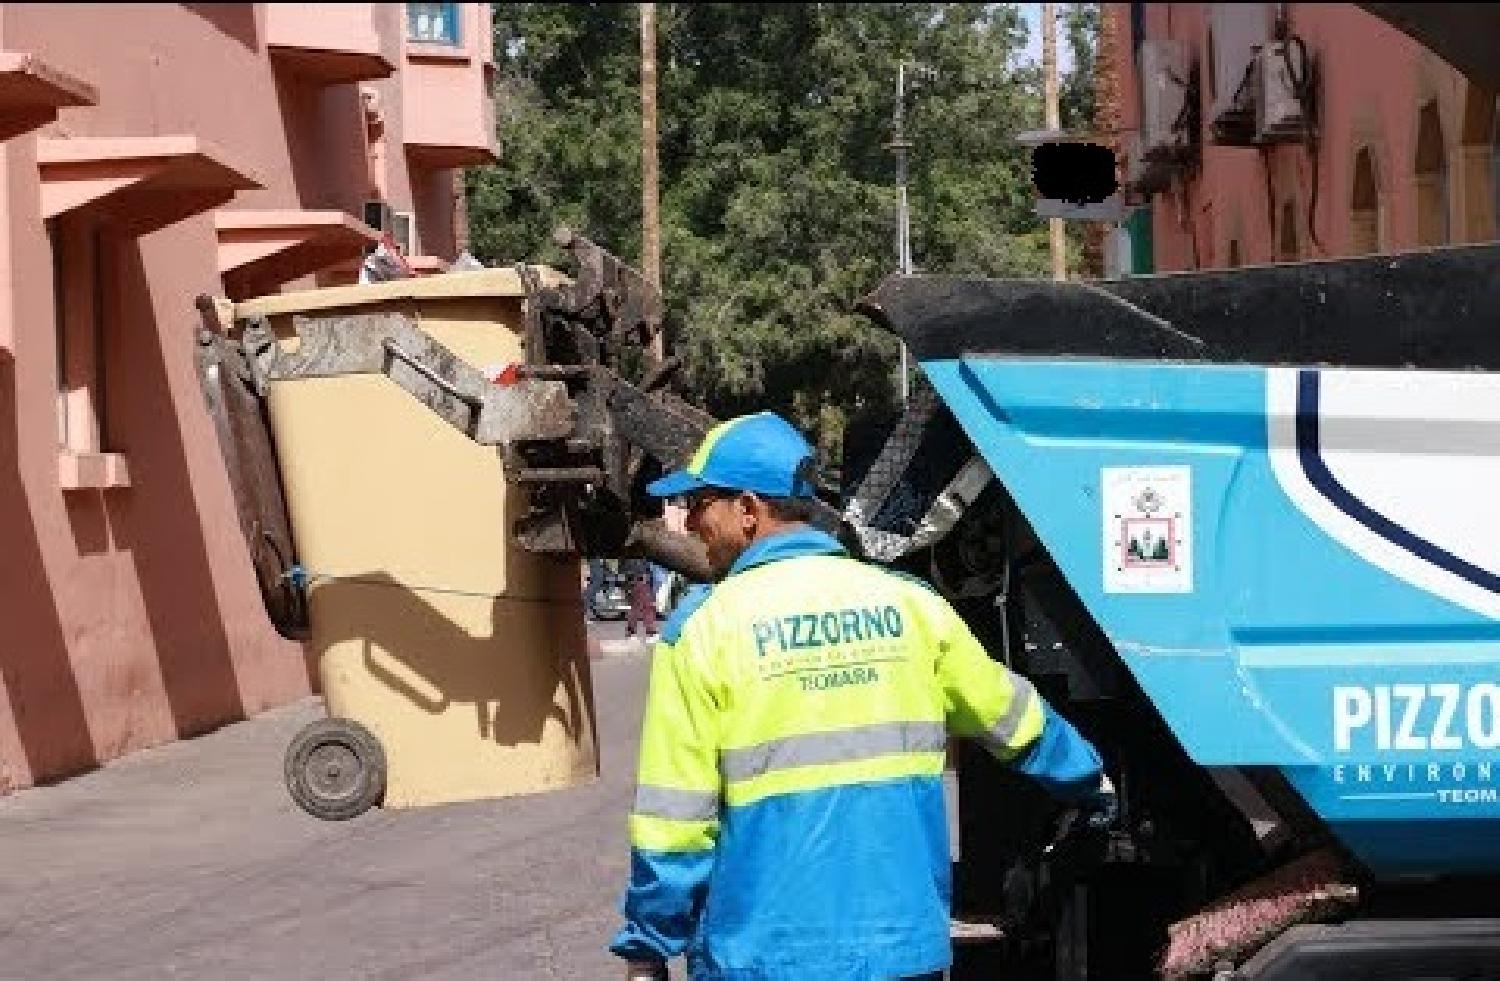 شركة ‘بيزورنو’ تنسحب من تدبير قطاع النظافة بمراكش